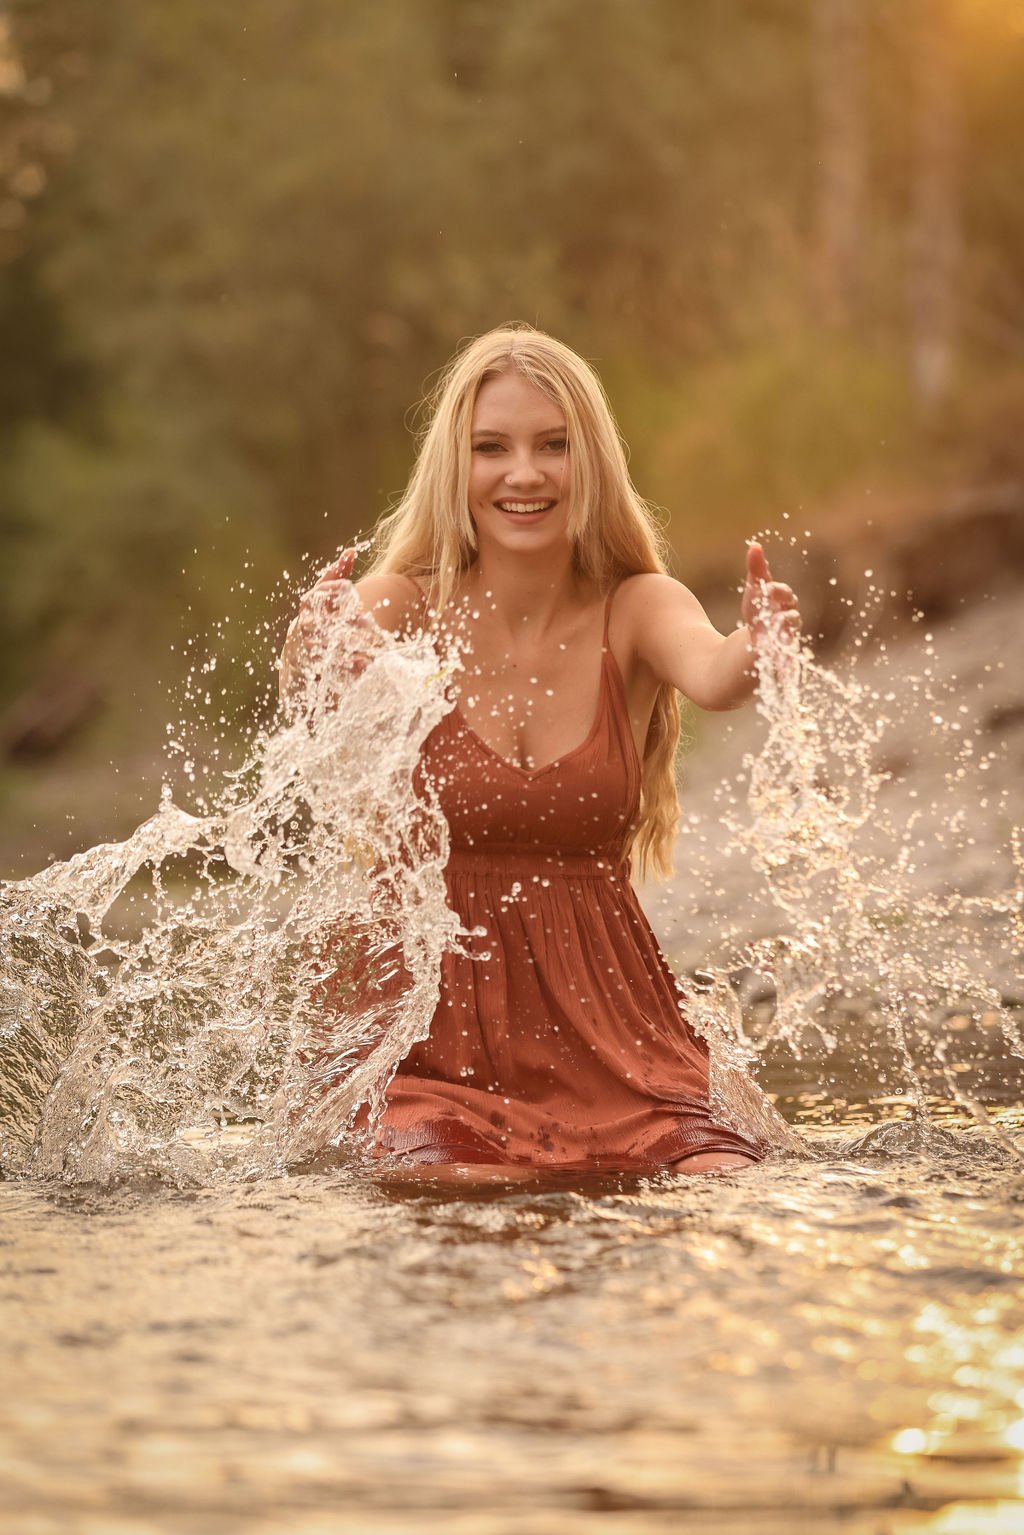 Senior portrait of girl in Clarkfork river splashing water.jpg